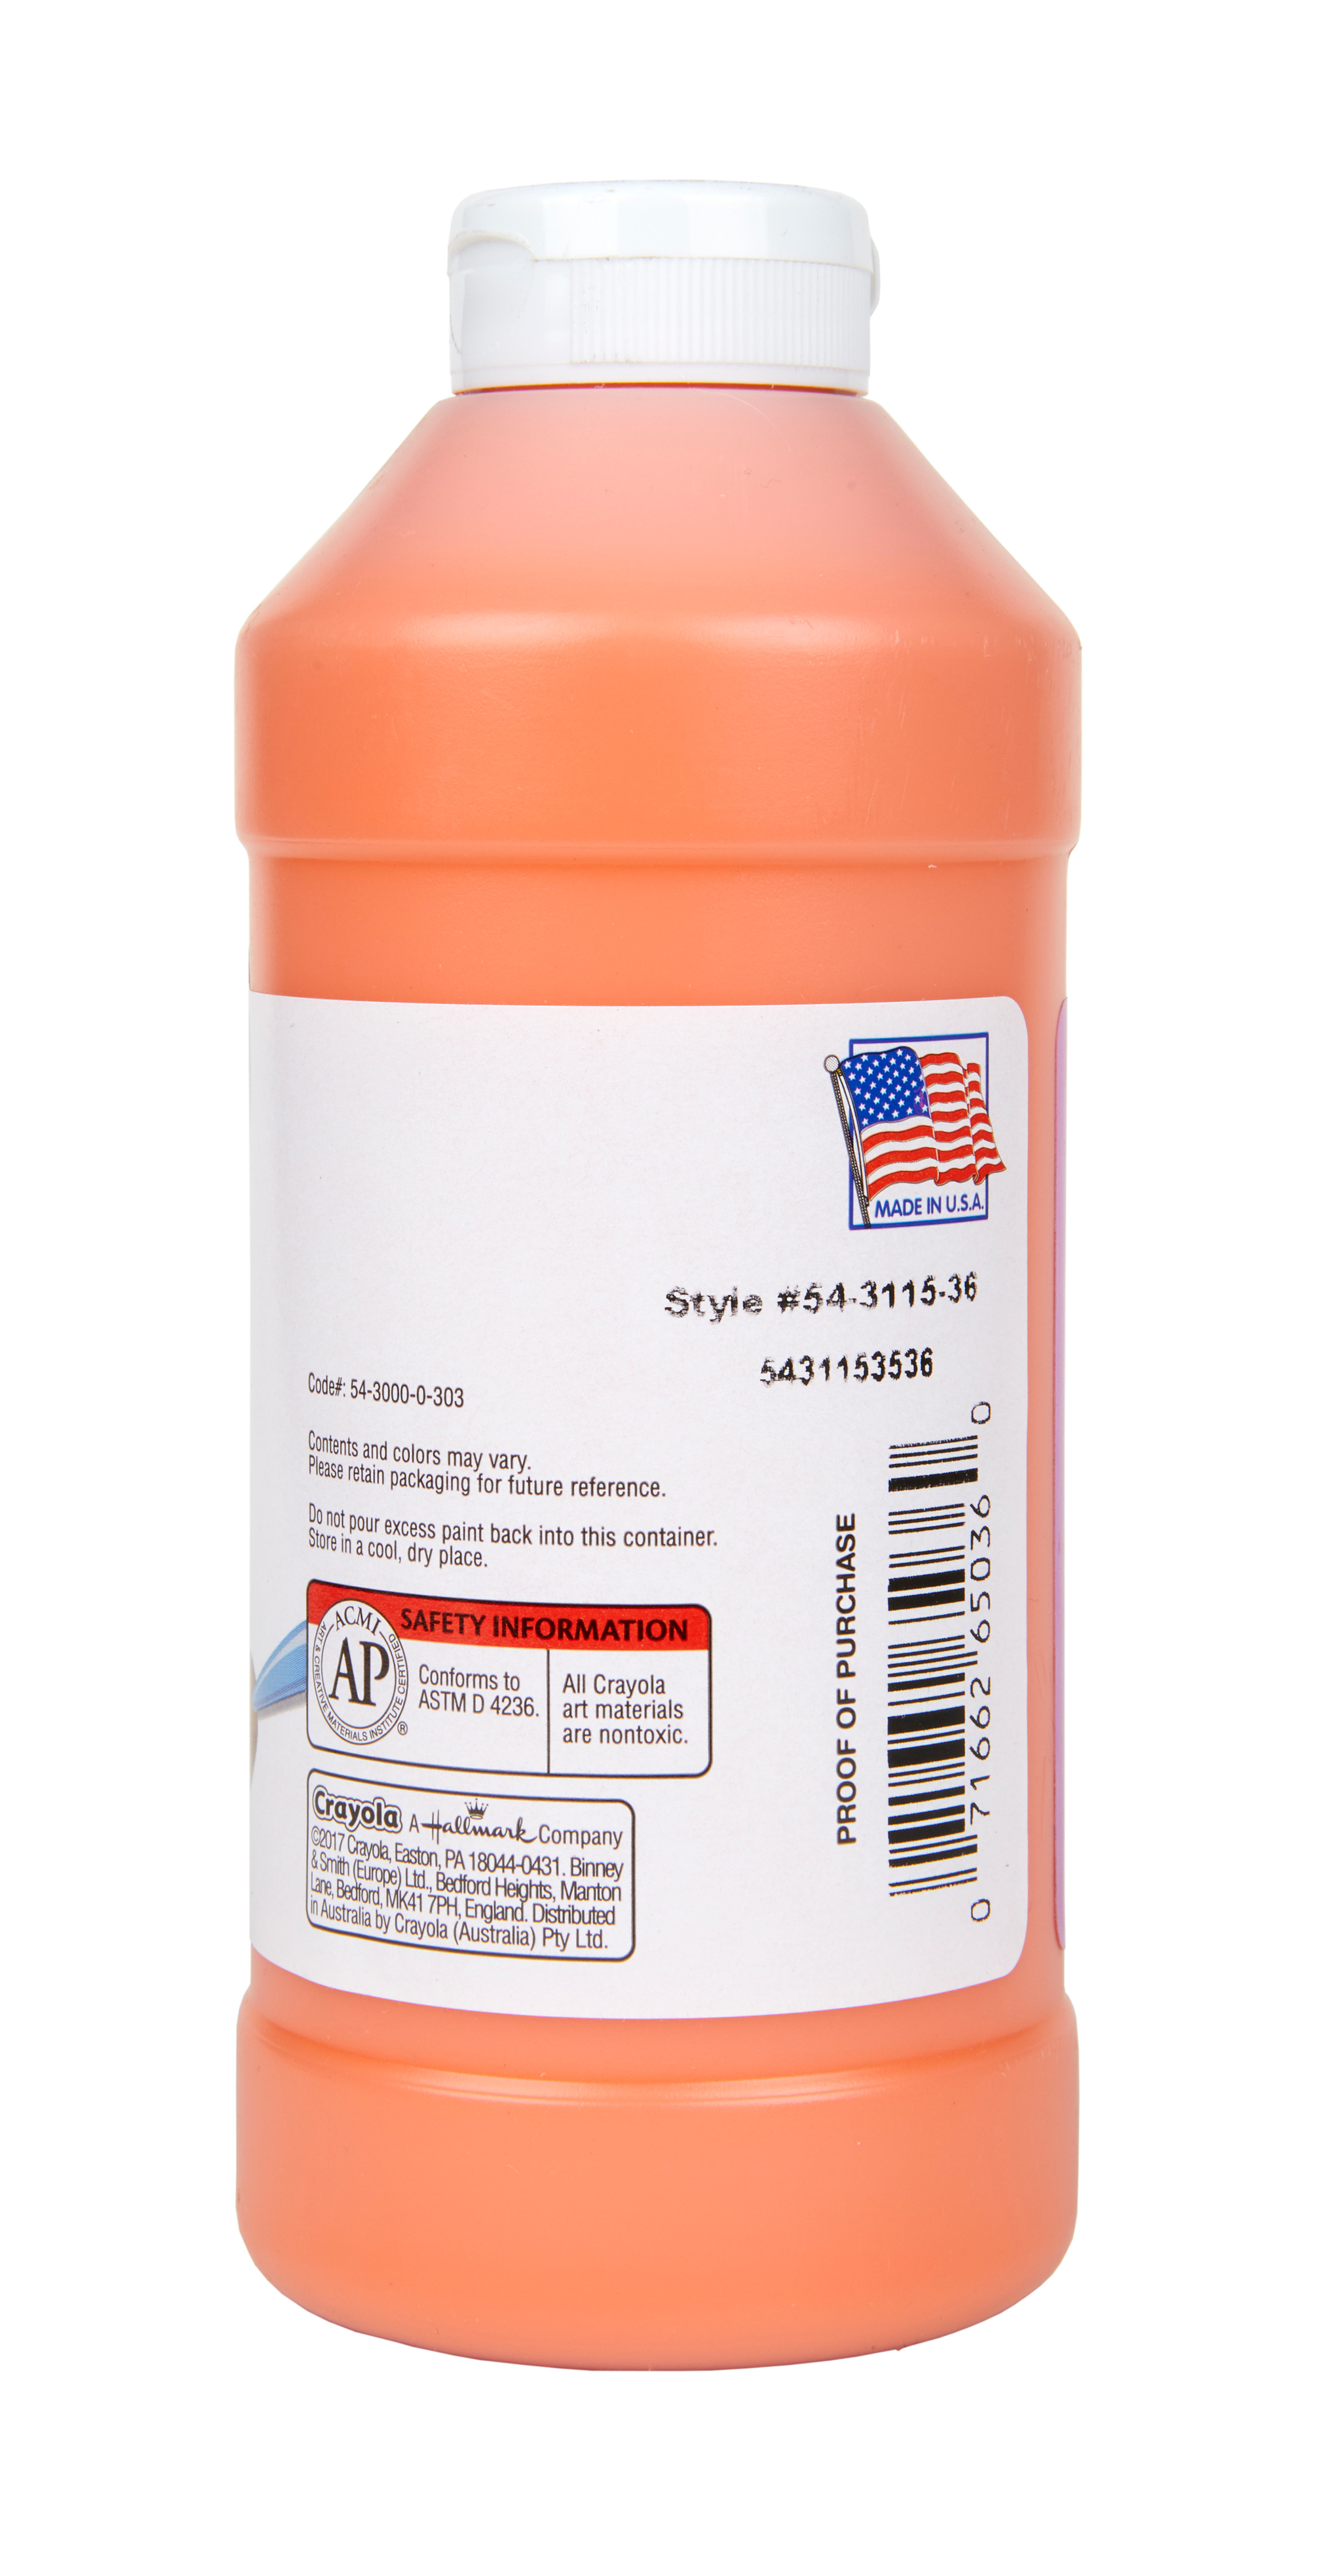 Crayola Orange Washable Tempera Paint, 32 Ounce Squeeze Bottle - image 4 of 8